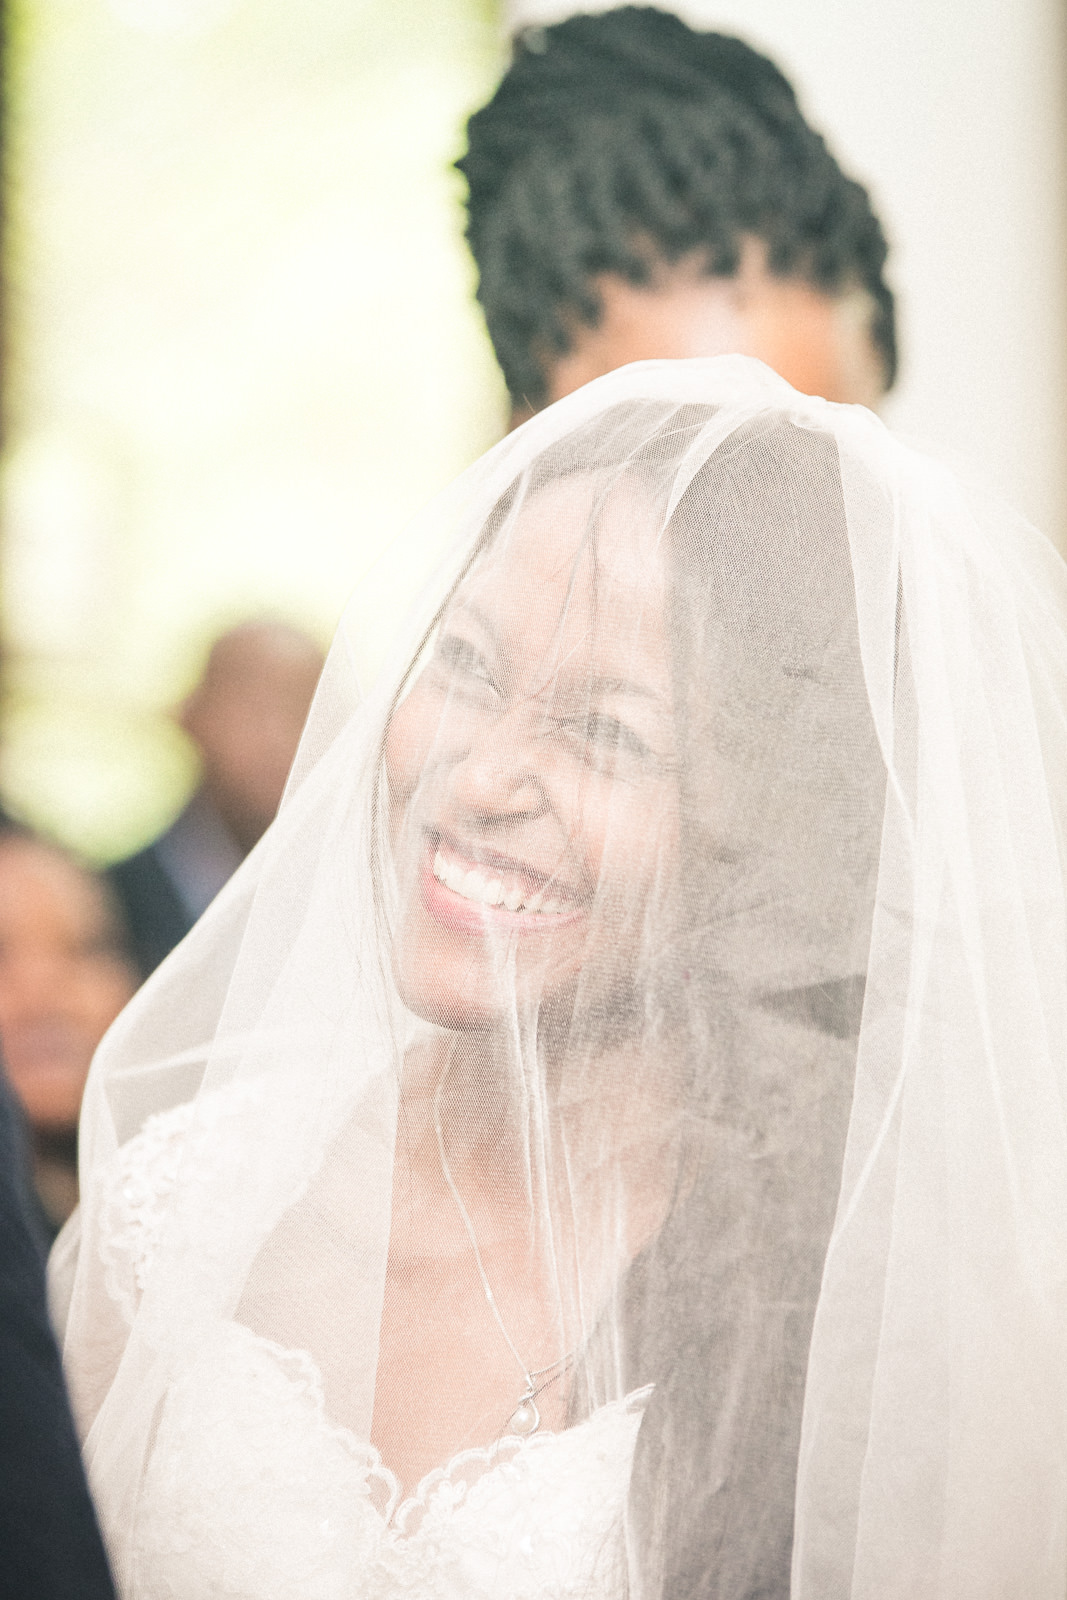 zululand melmoth wedding dress african photography veil